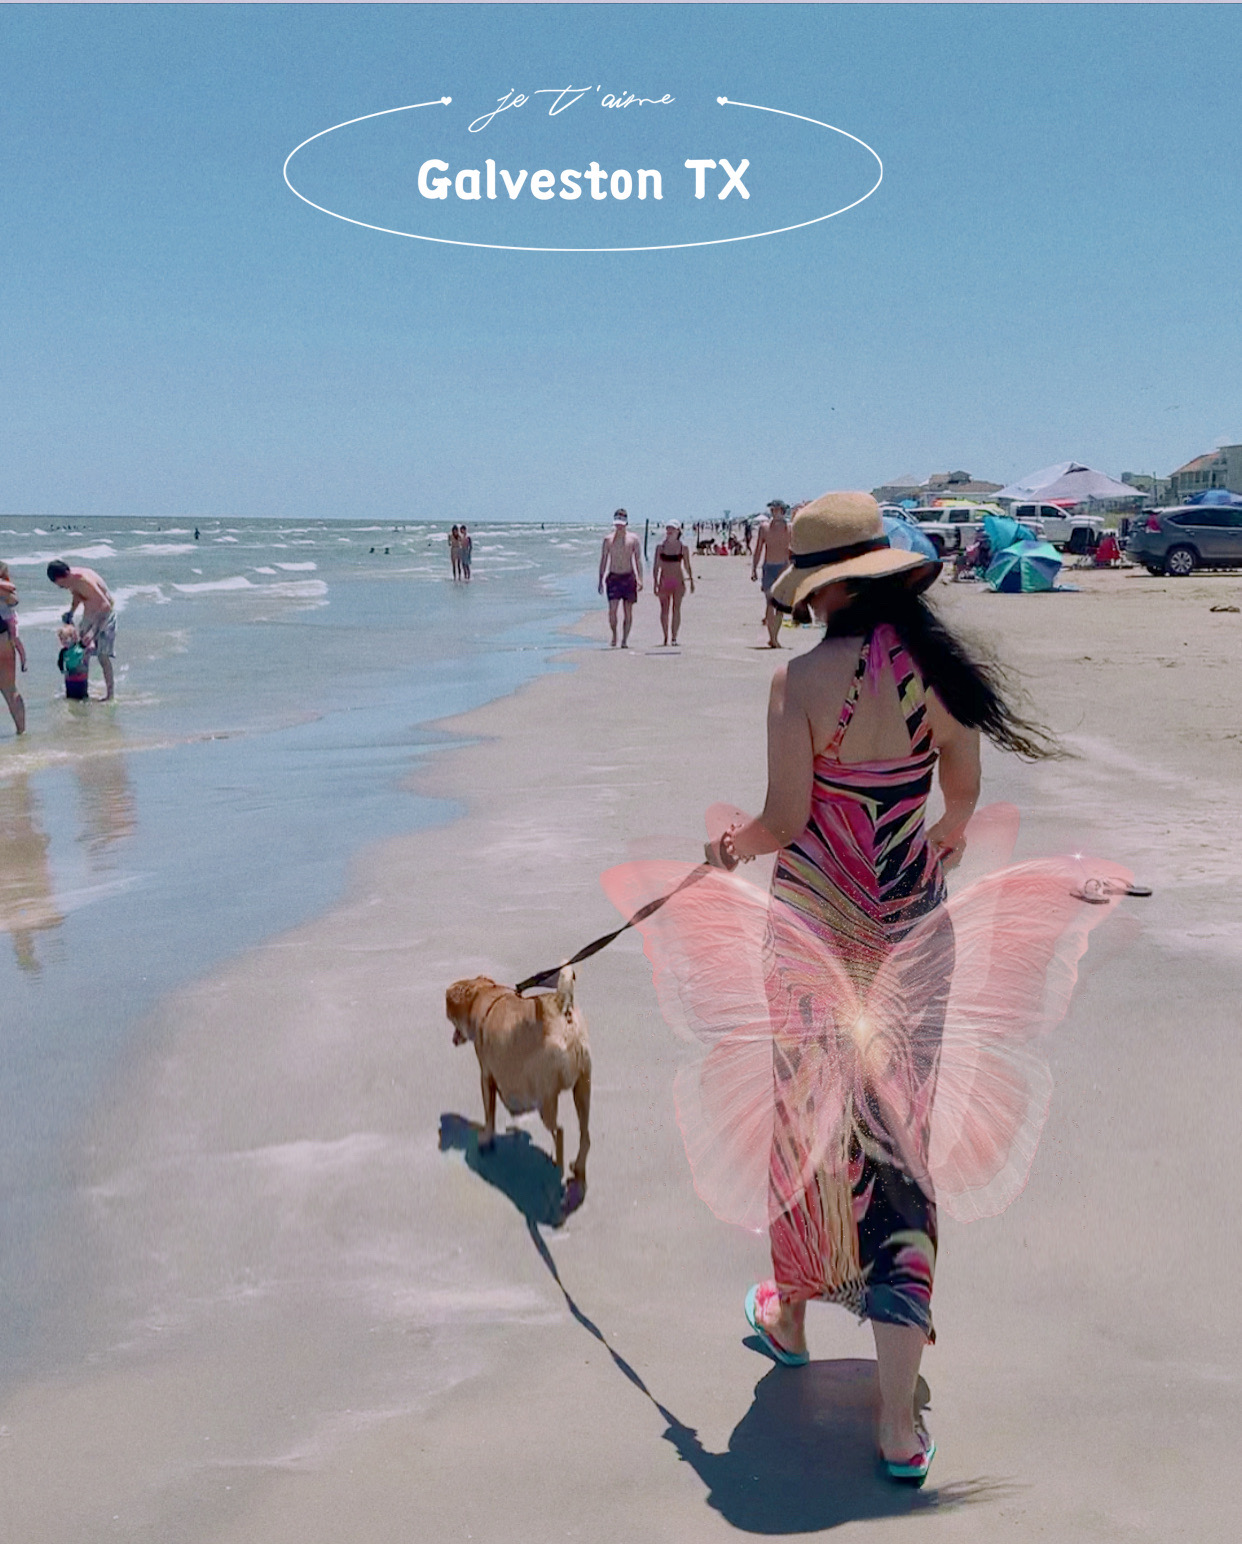 德克萨斯州-加尔维斯顿   加尔维斯顿是一个顶级的海滩旅游地